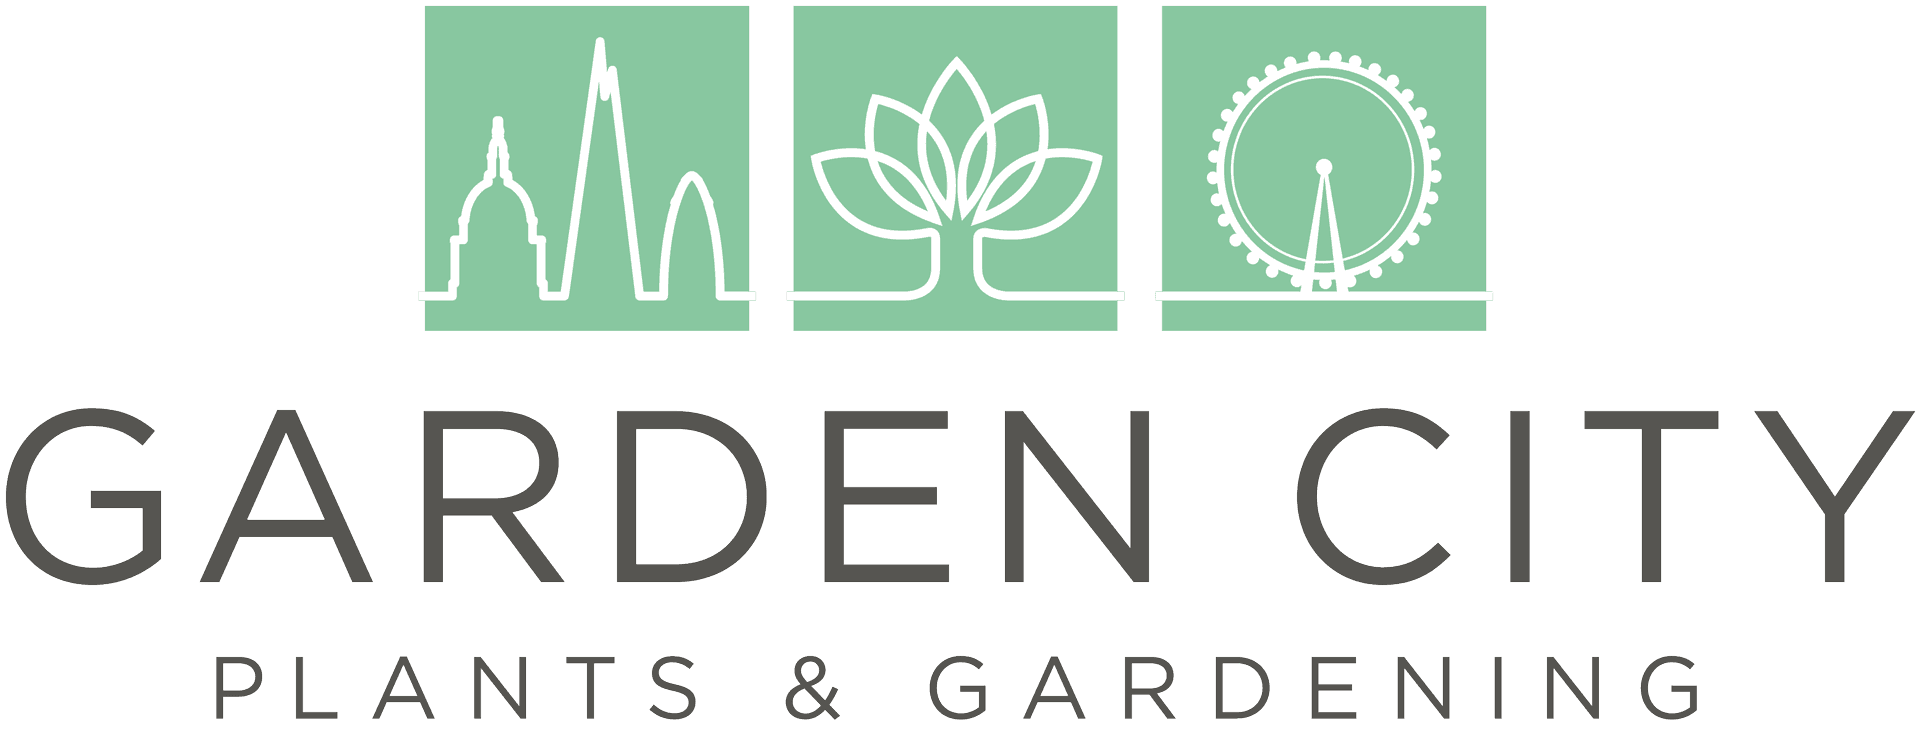 main logo of garden city